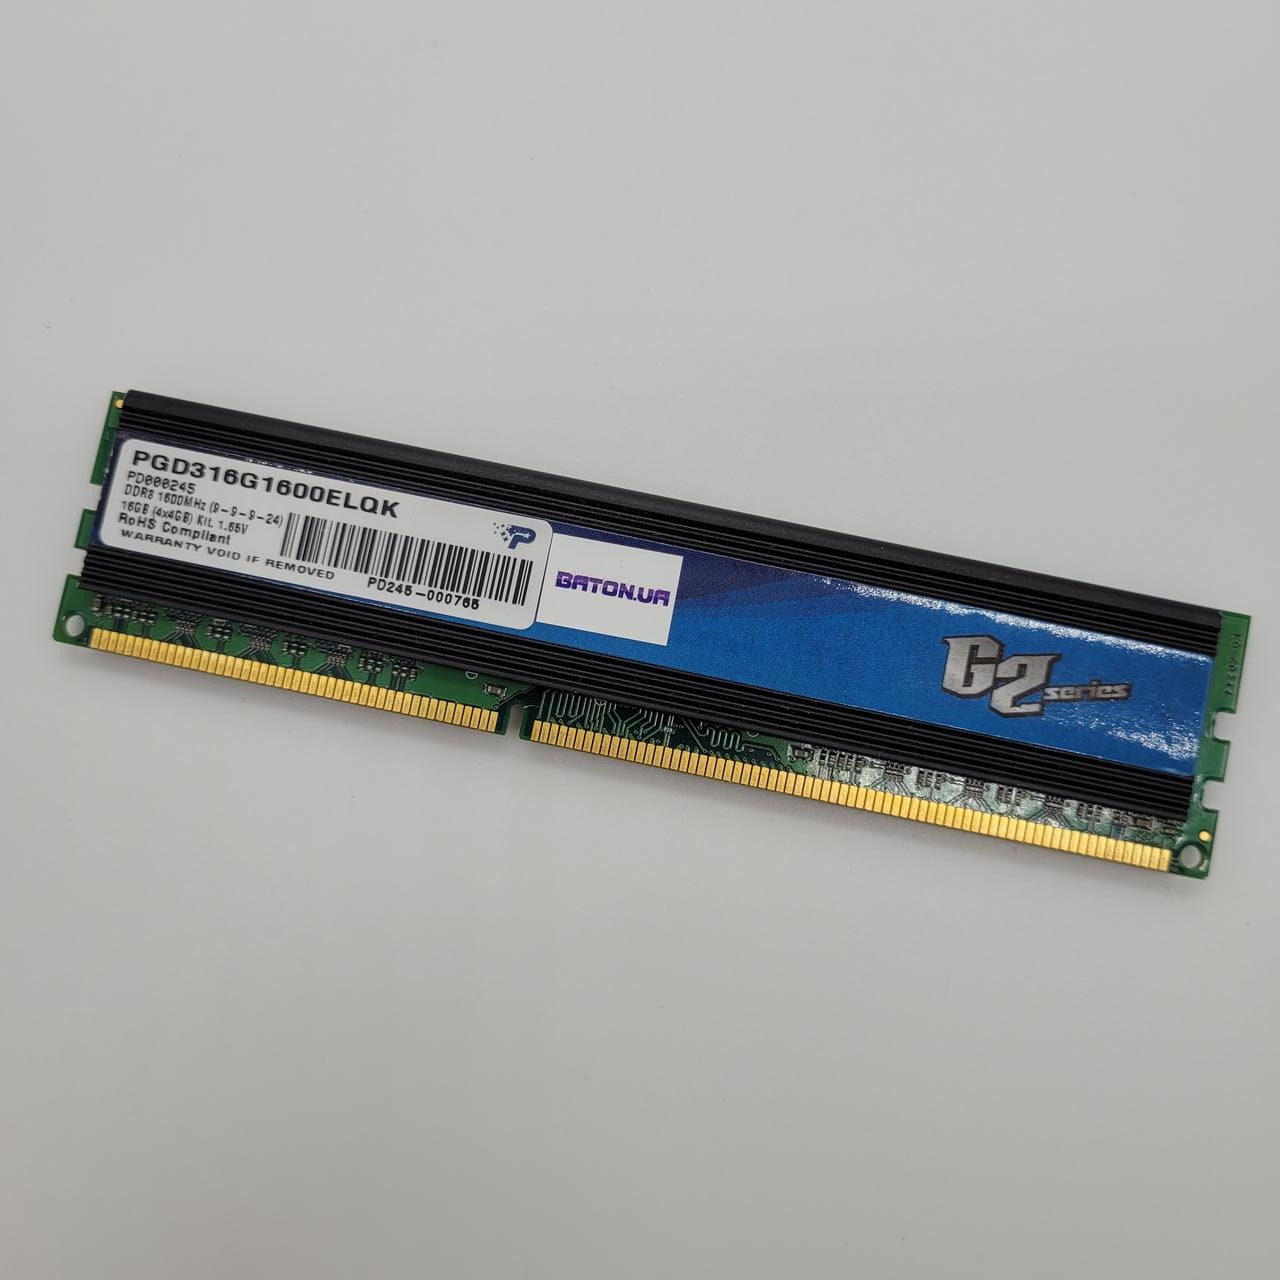 Ігрова оперативна пам'ять Patriot G2 series DDR3 4Gb 1600MHz PC3 12800U CL9 (PGD316G1600ELQK) 1,65V Б/У, фото 1